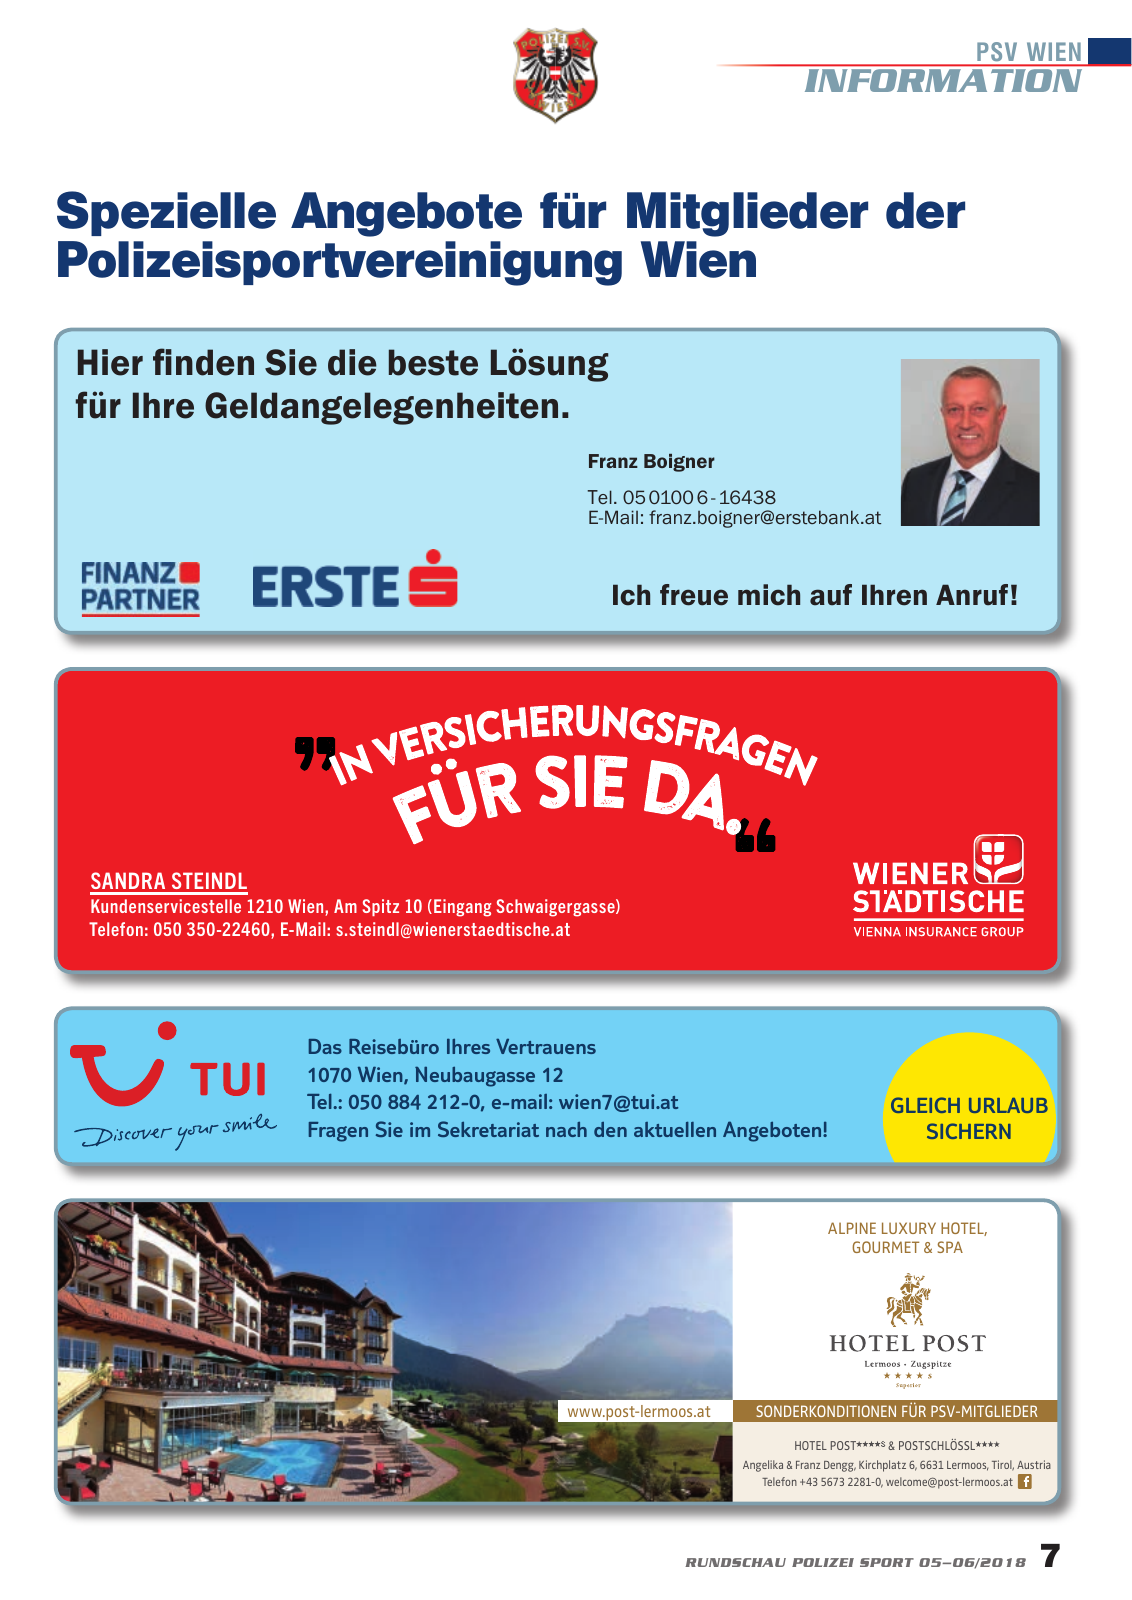 Vorschau Rundschau Polizei Sport 05-06/2018 Seite 7